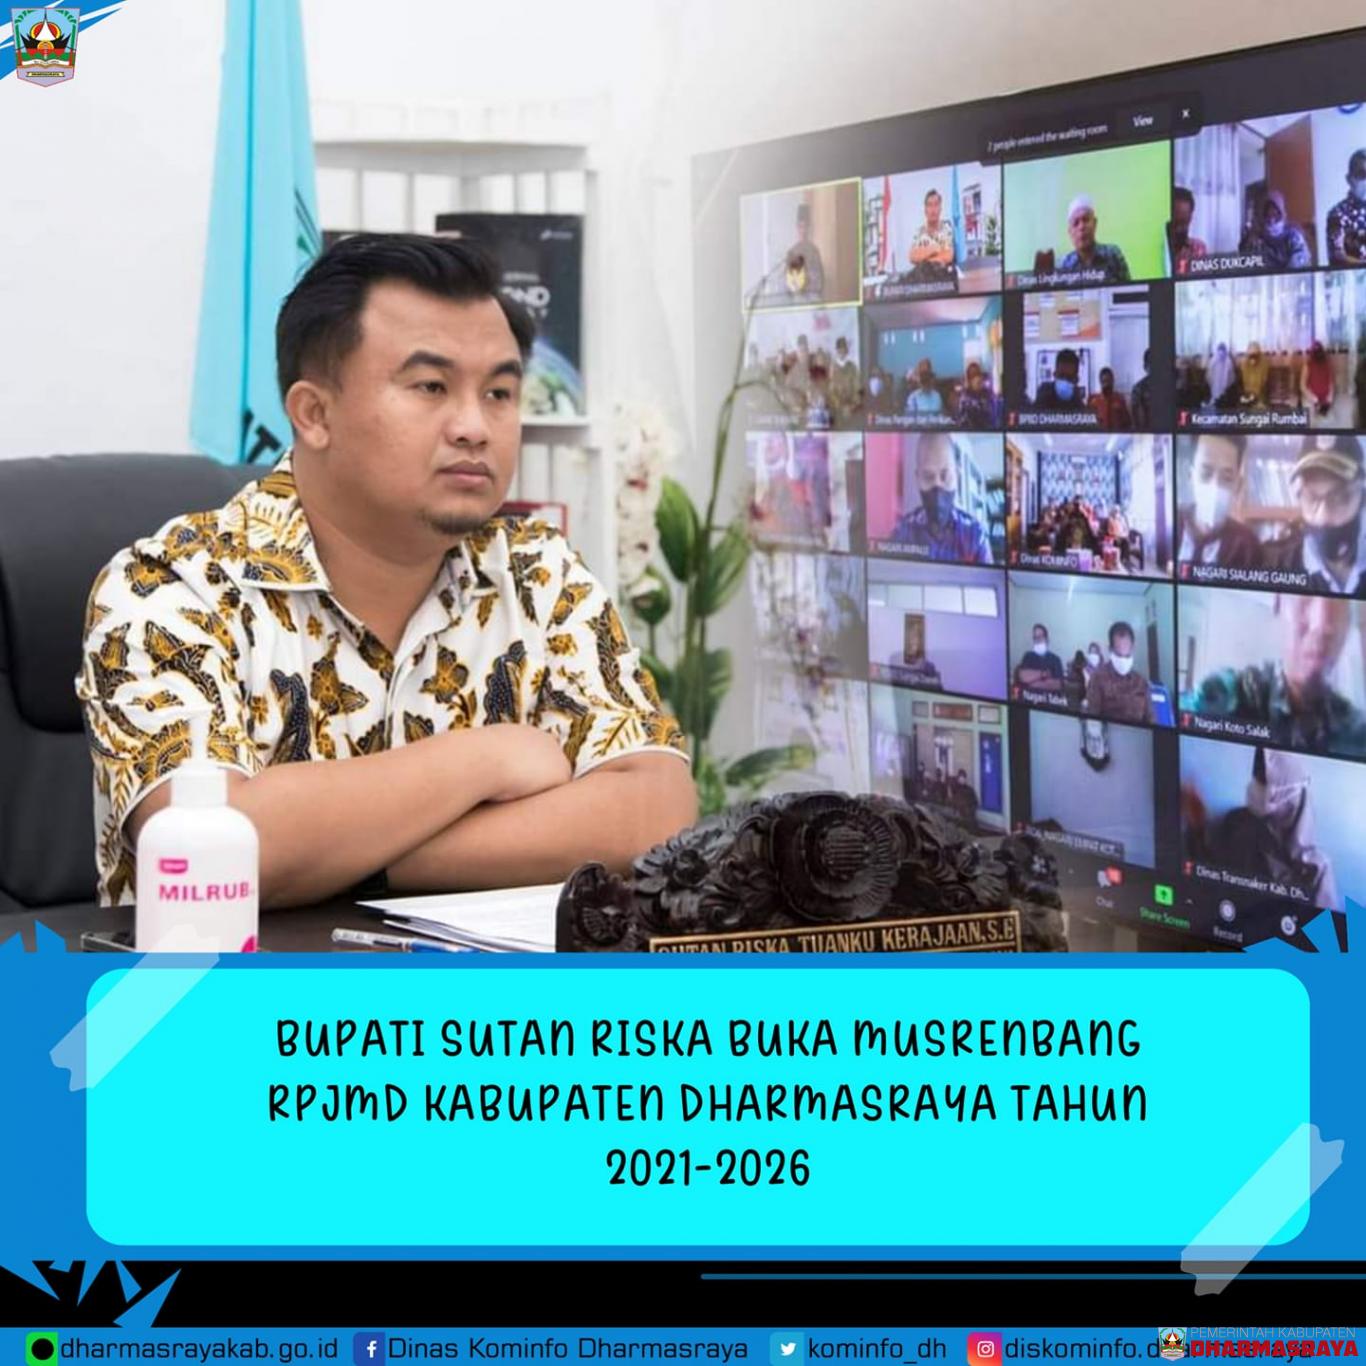 Bupati Sutan Riska Buka Musrenbang Rpjmd Kabupaten Dharmasraya Tahun 2021-2026